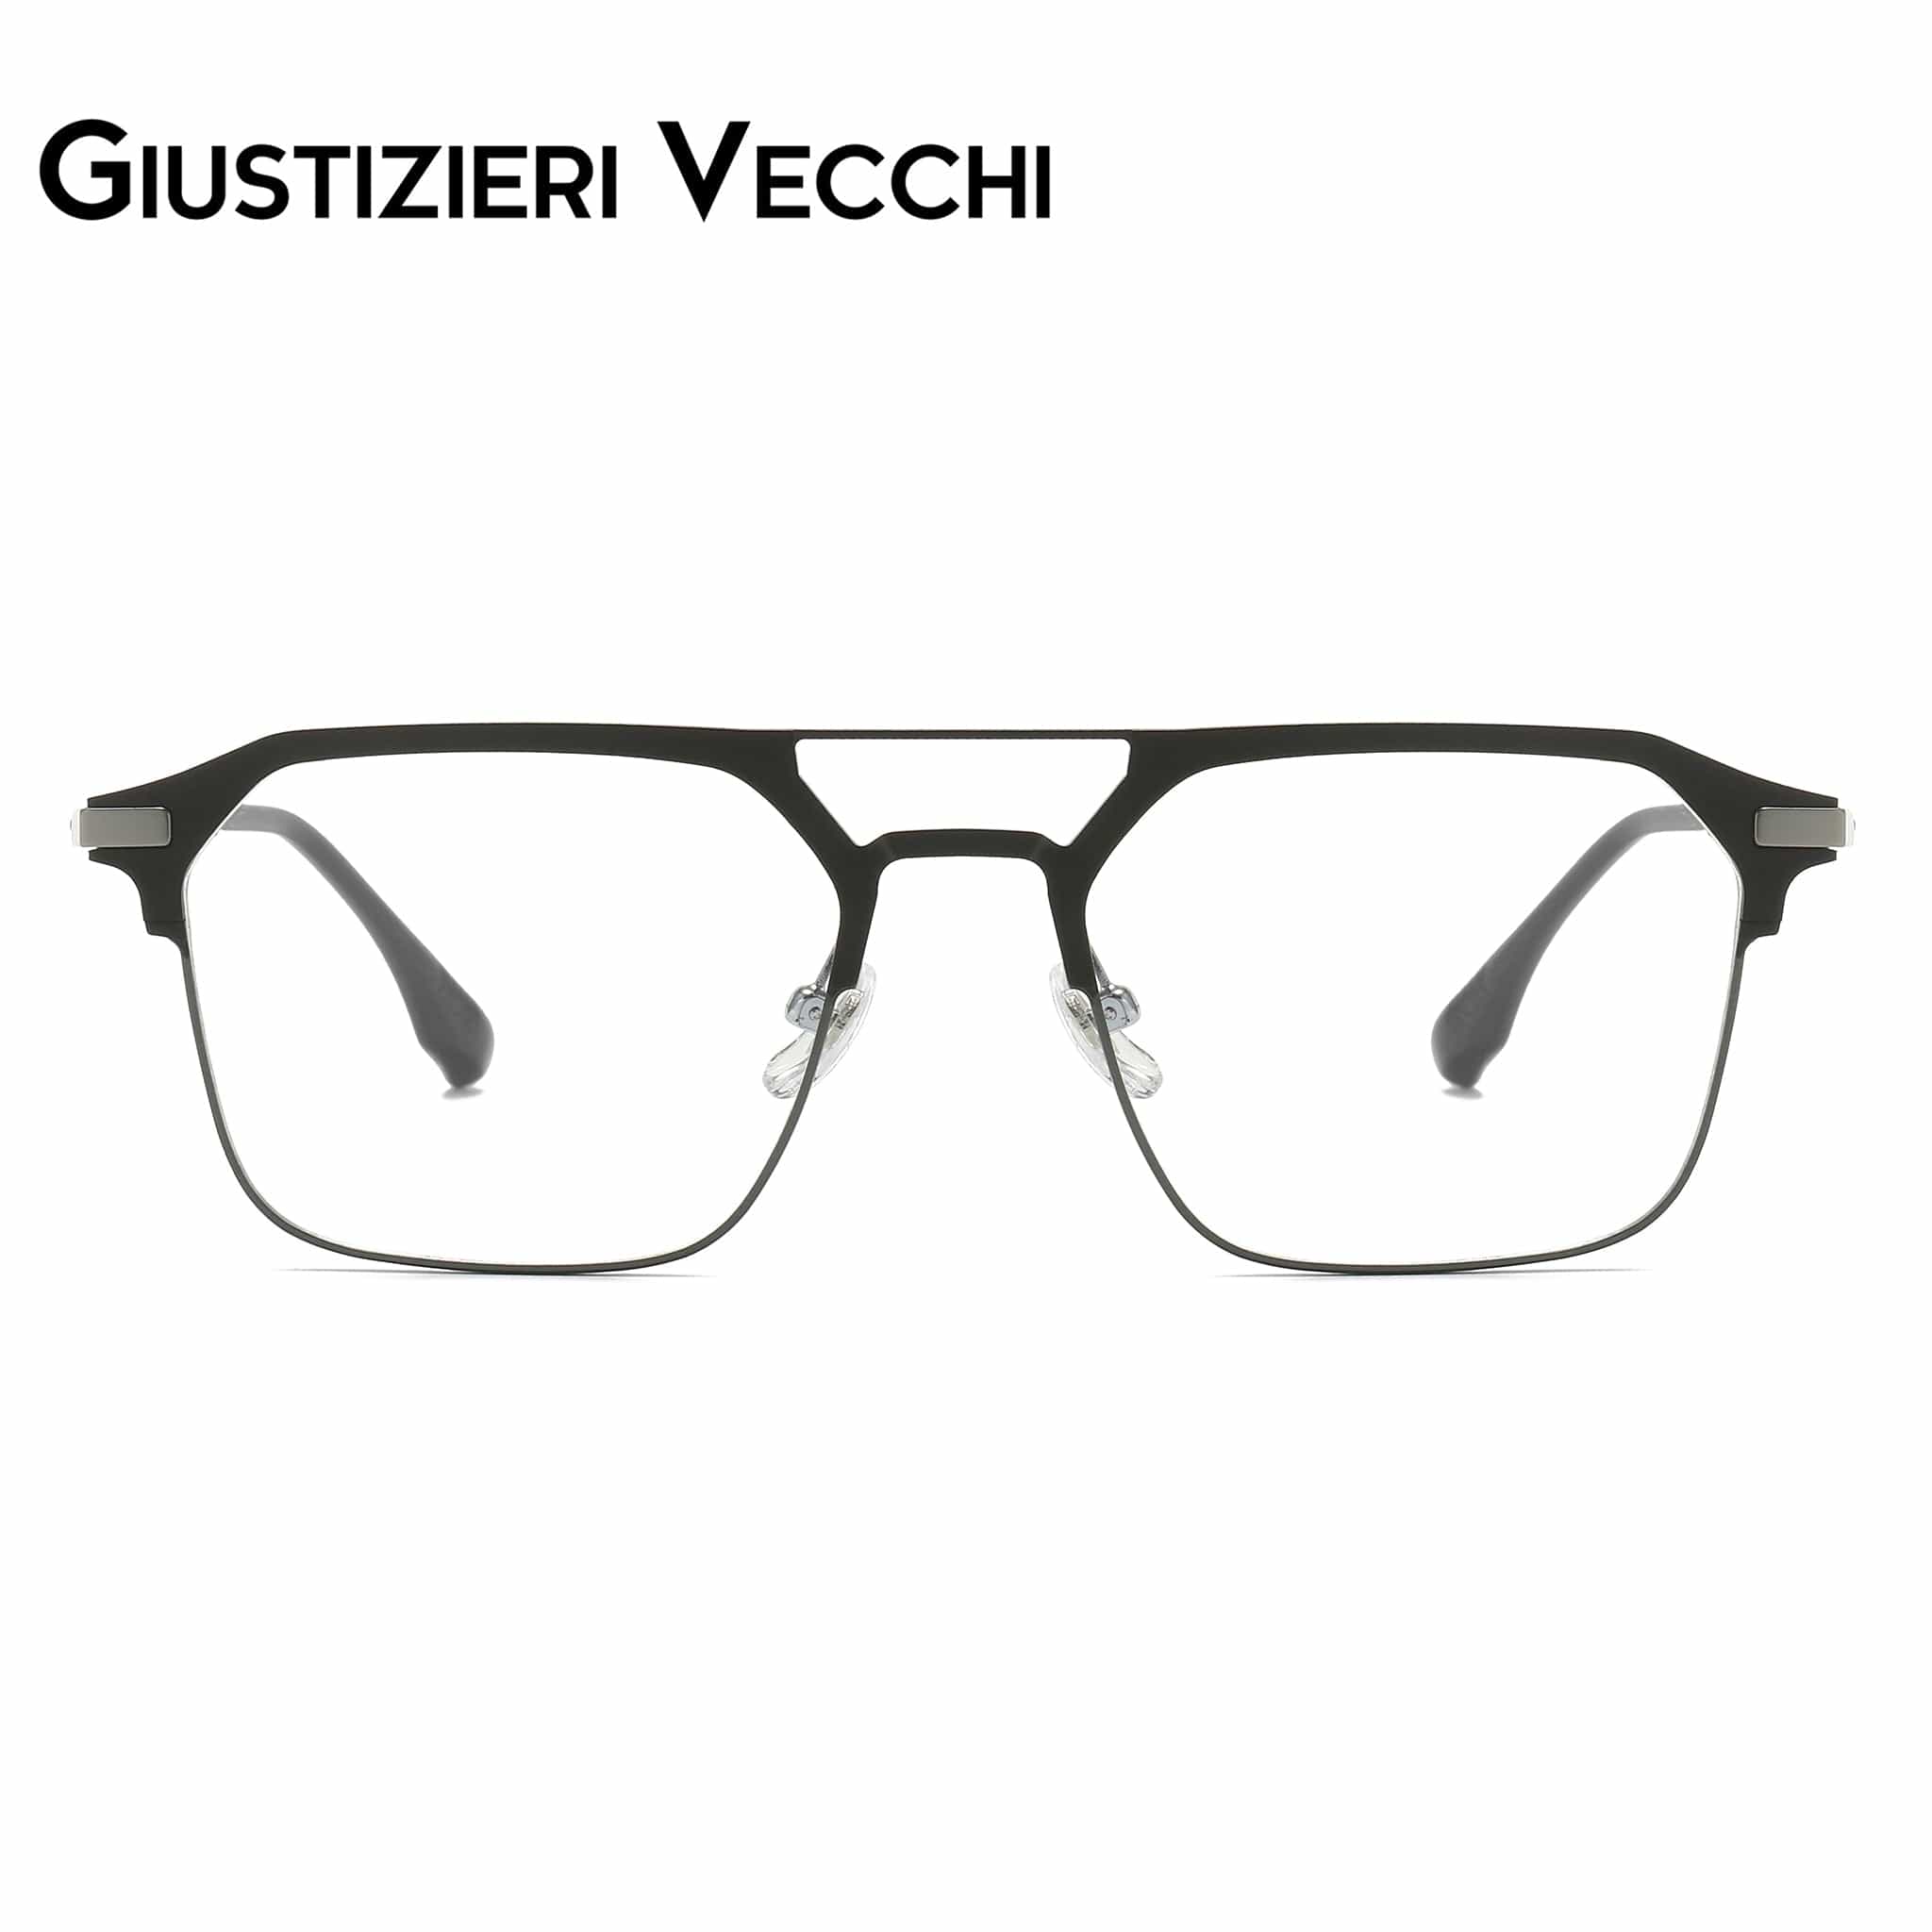 GIUSTIZIERI VECCHI Eyeglasses Medium / Black with Grey IceBlast Uno